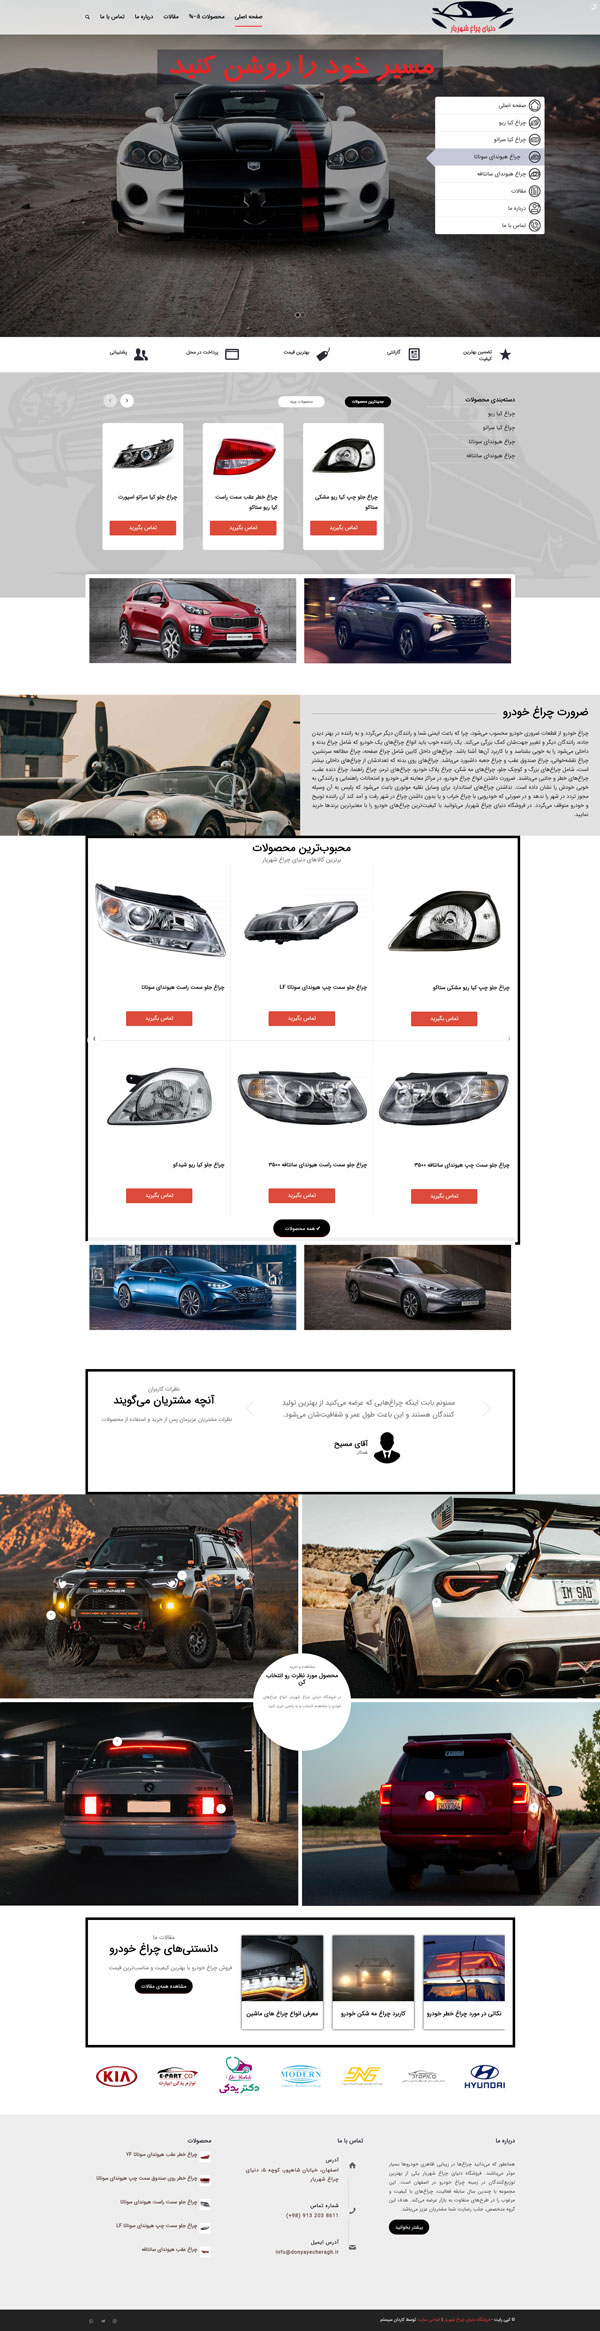 طراحی سایت شهریار |  فروشگاه انواع چراغ خودرو